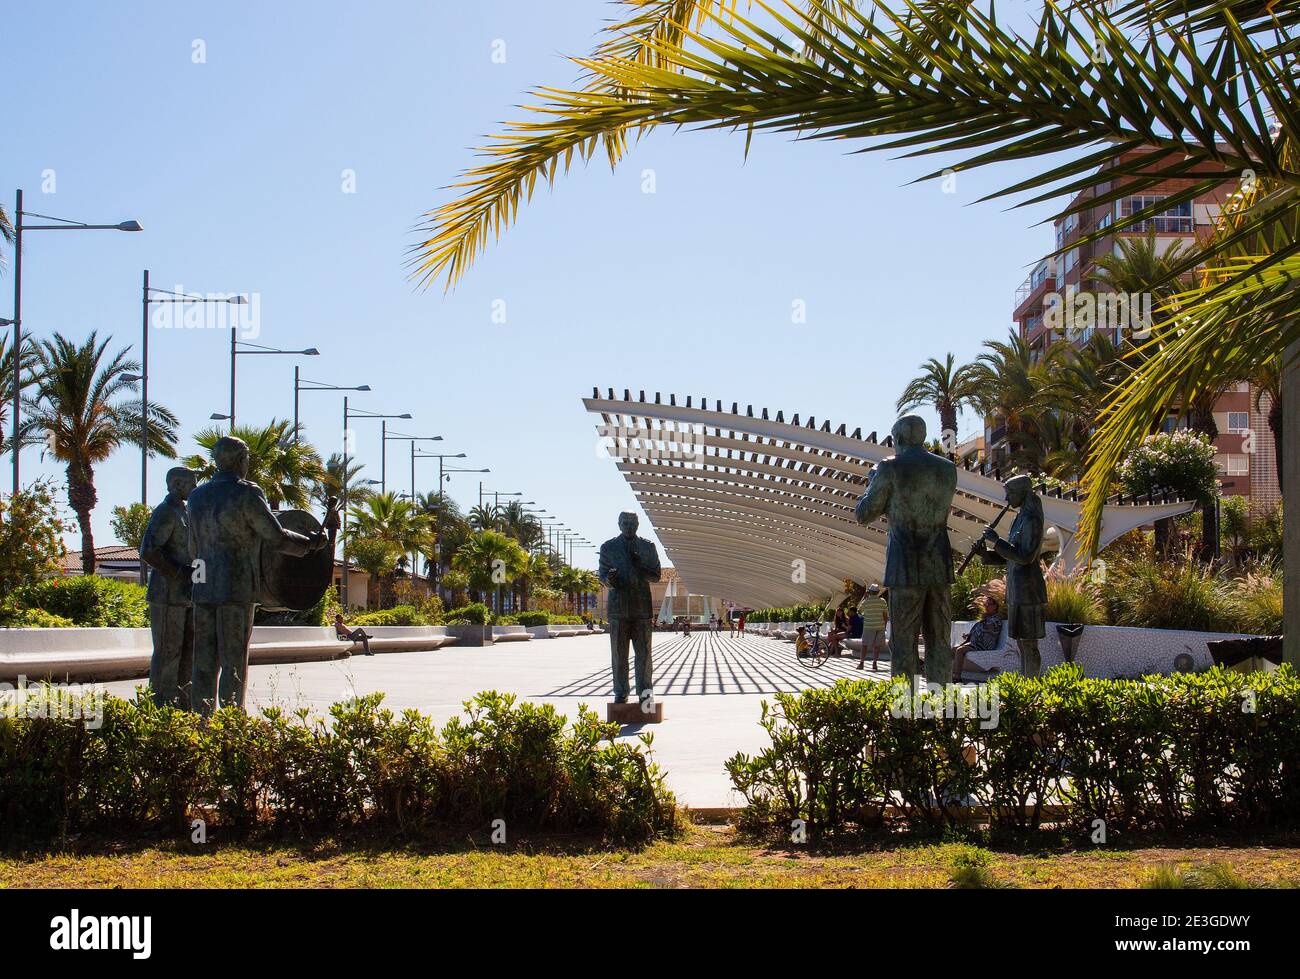 Torrevieja, Costa Blanca, Spanien. An der Strandpromenade befindet sich der Paseo Maritimo Juan Aparicio. Auf dem Gelände des alten Bandes befinden sich fünf Bronzen. Stockfoto